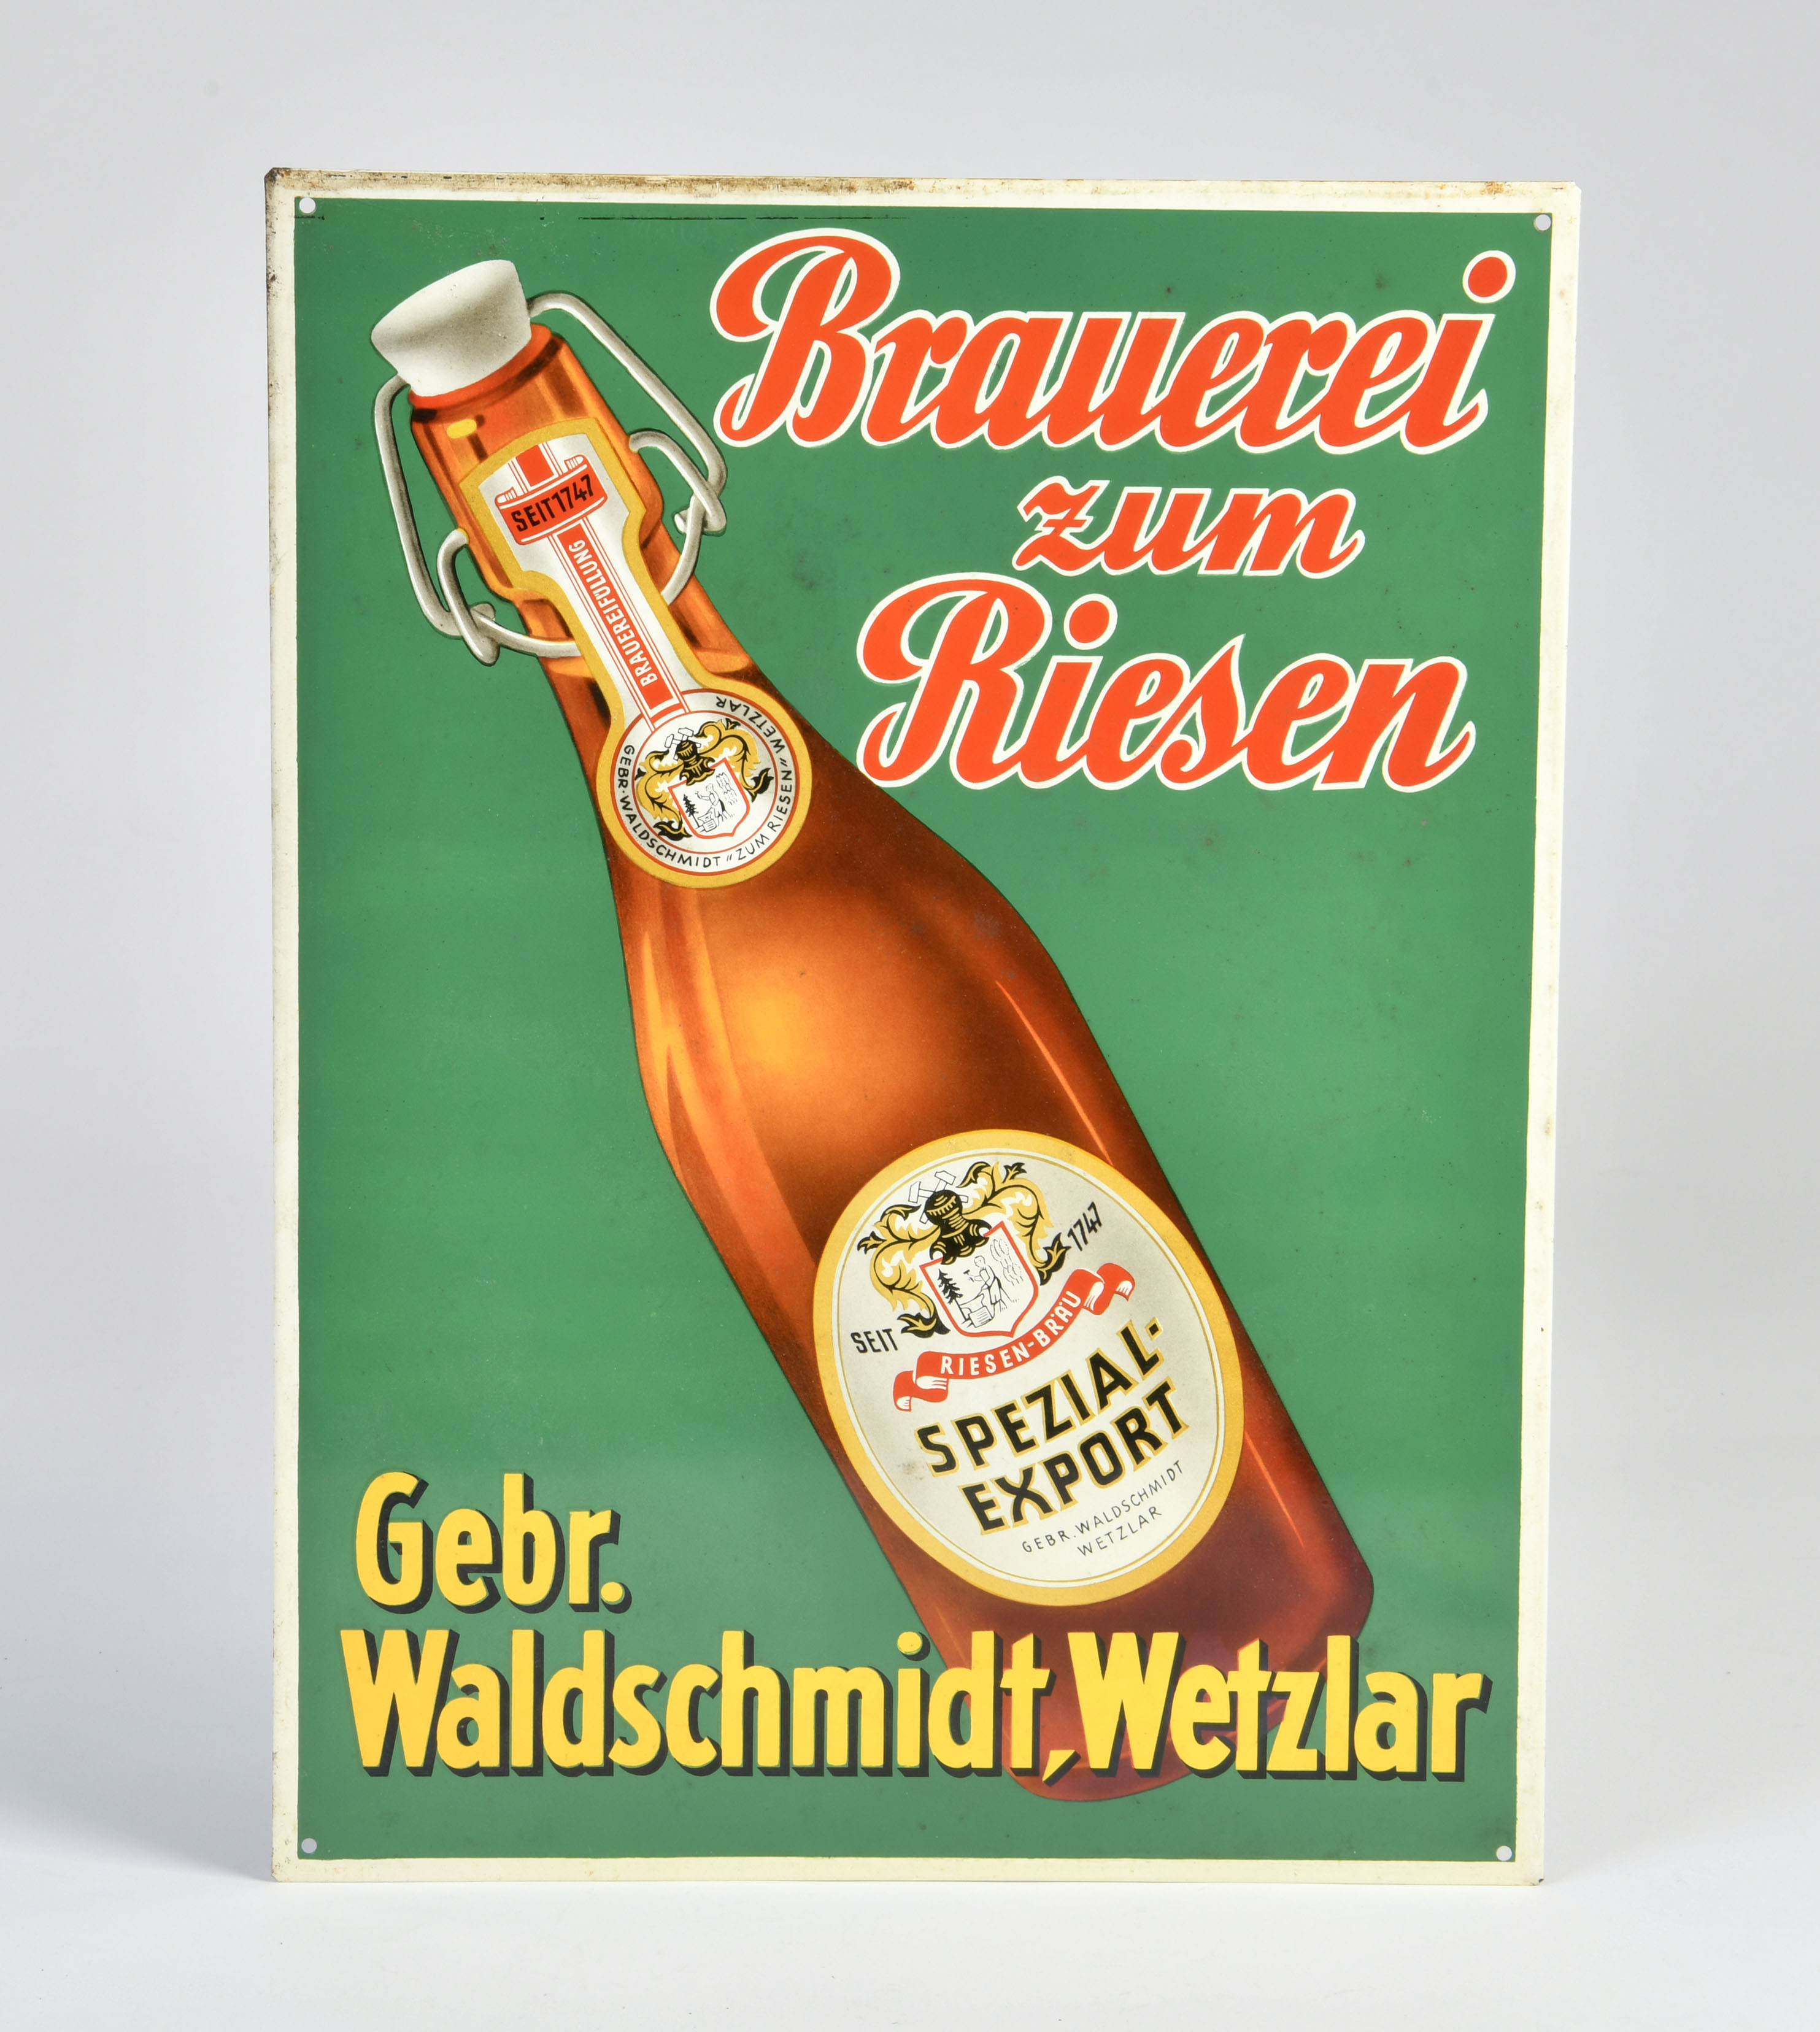 Brauerei zum Riesen, Riesen-Bräu, tin sign, 30x40cm, C 1